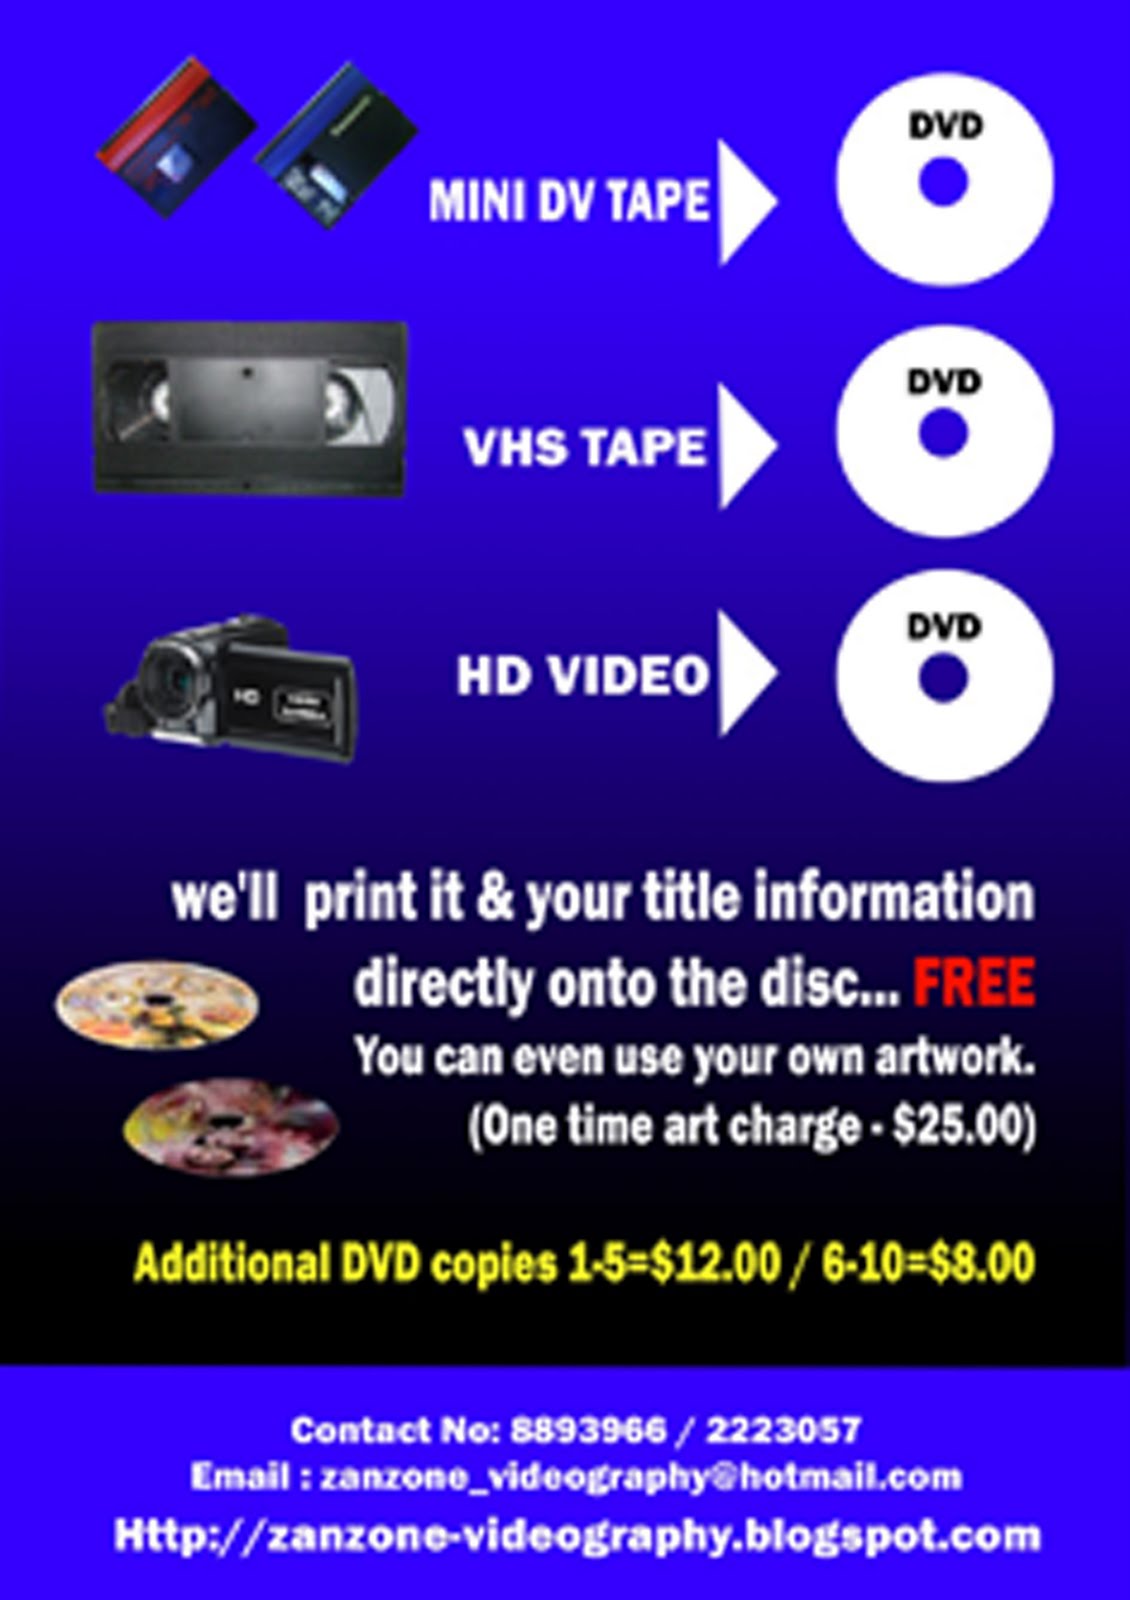 Transfer MINI DV, VHS TAPE, HD Video to DVD